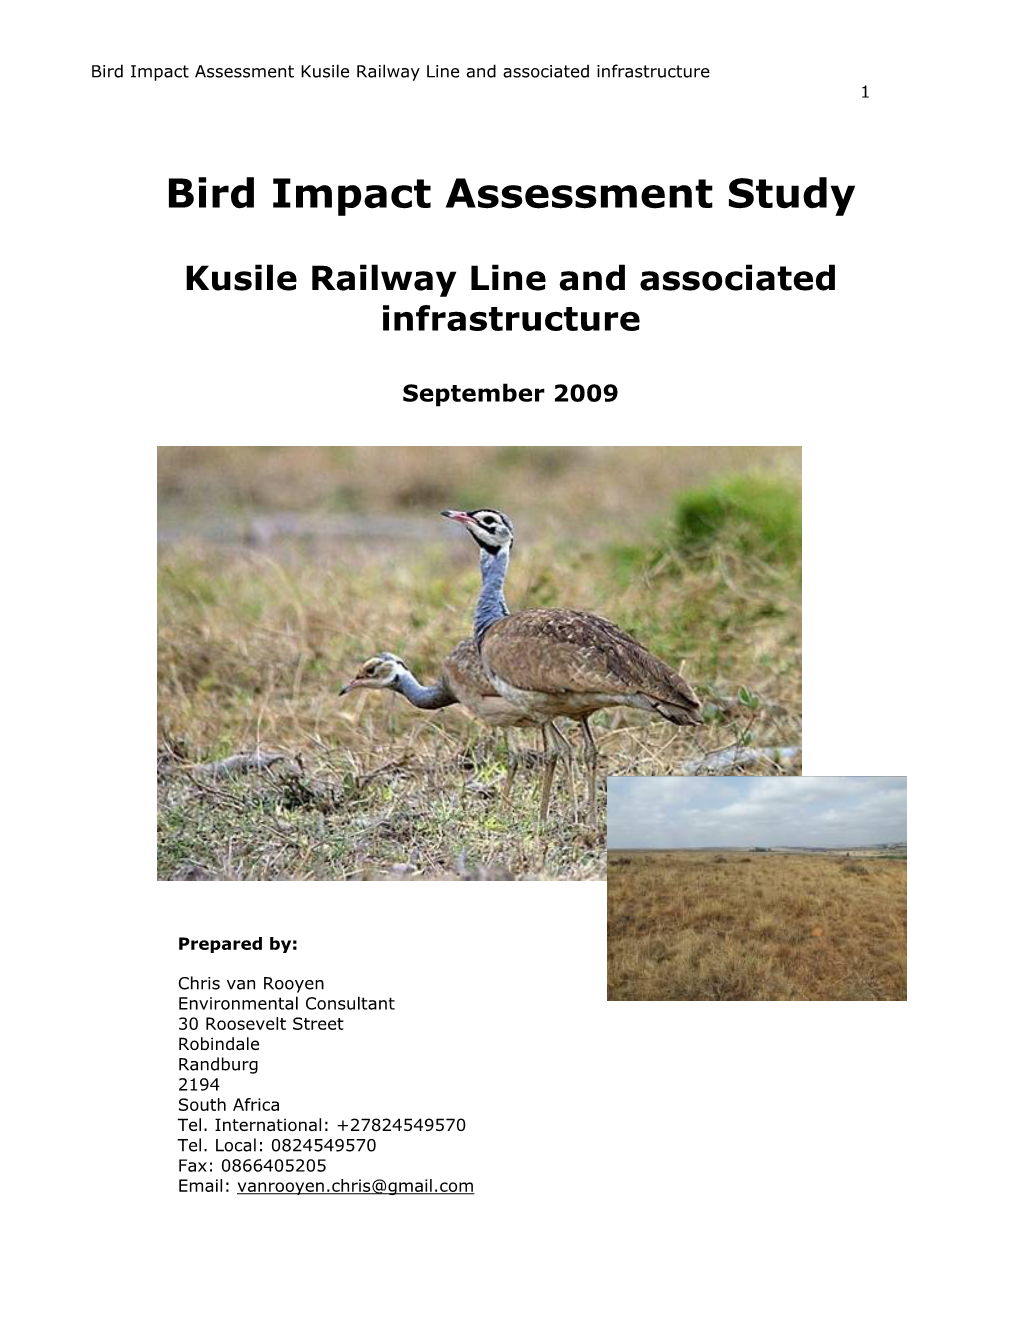 Bird Impact Assessment Study